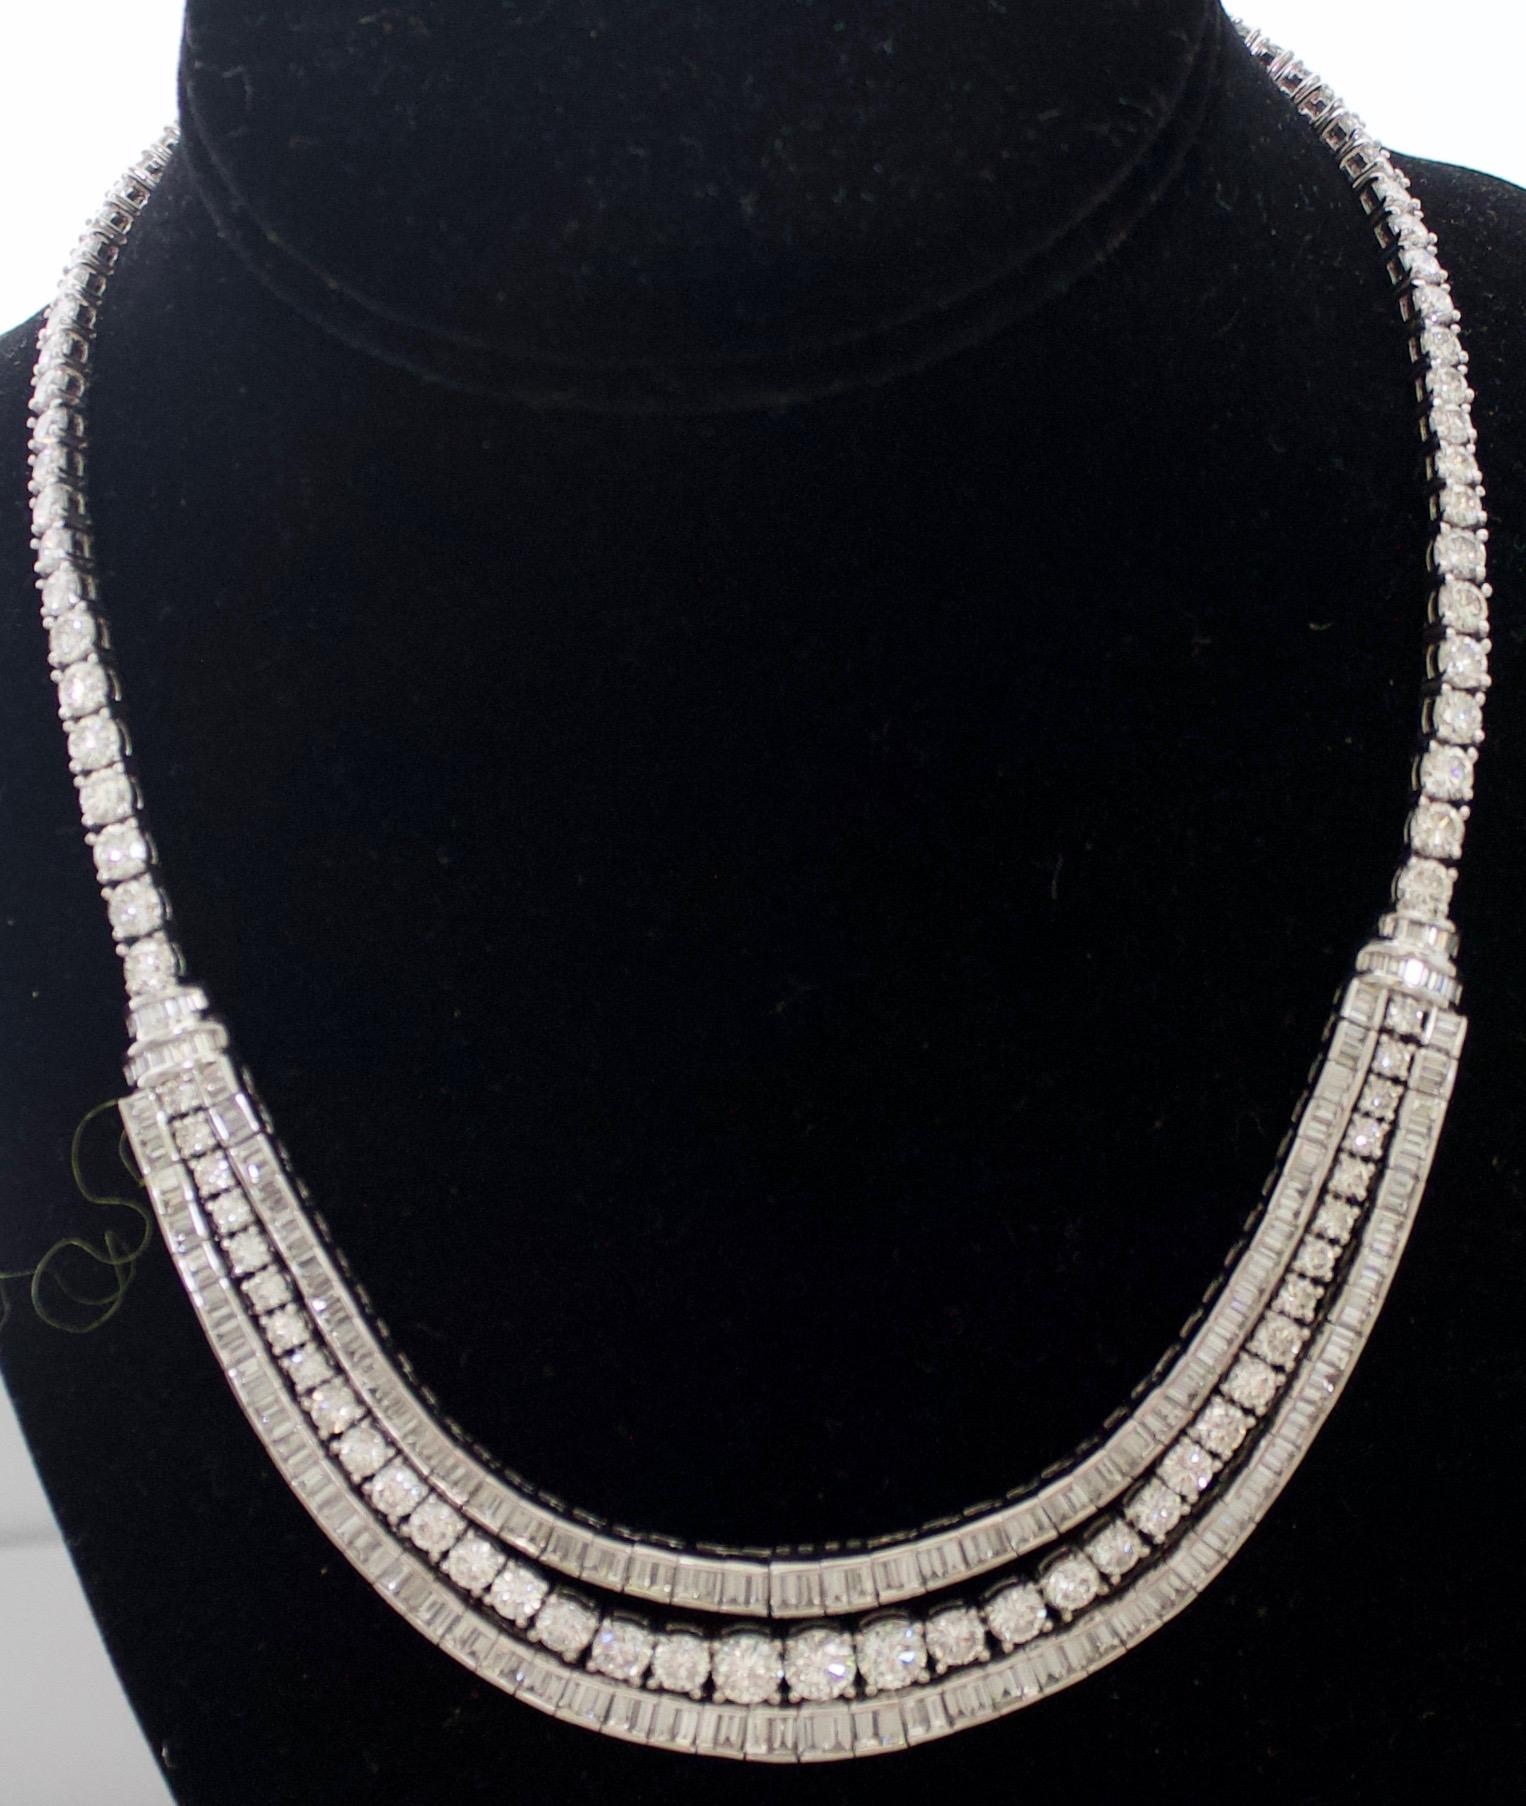 Ernsthaft  Platin- und Diamant-Halskette mit 45,00 Karat.
Wir stellen Ihnen die Diamant-Halskette Lady's Platinum vor, ein atemberaubendes Schmuckstück, das Eleganz und Luxus ausstrahlt. Dieses aus hochwertigem Platin gefertigte Collier ist mit